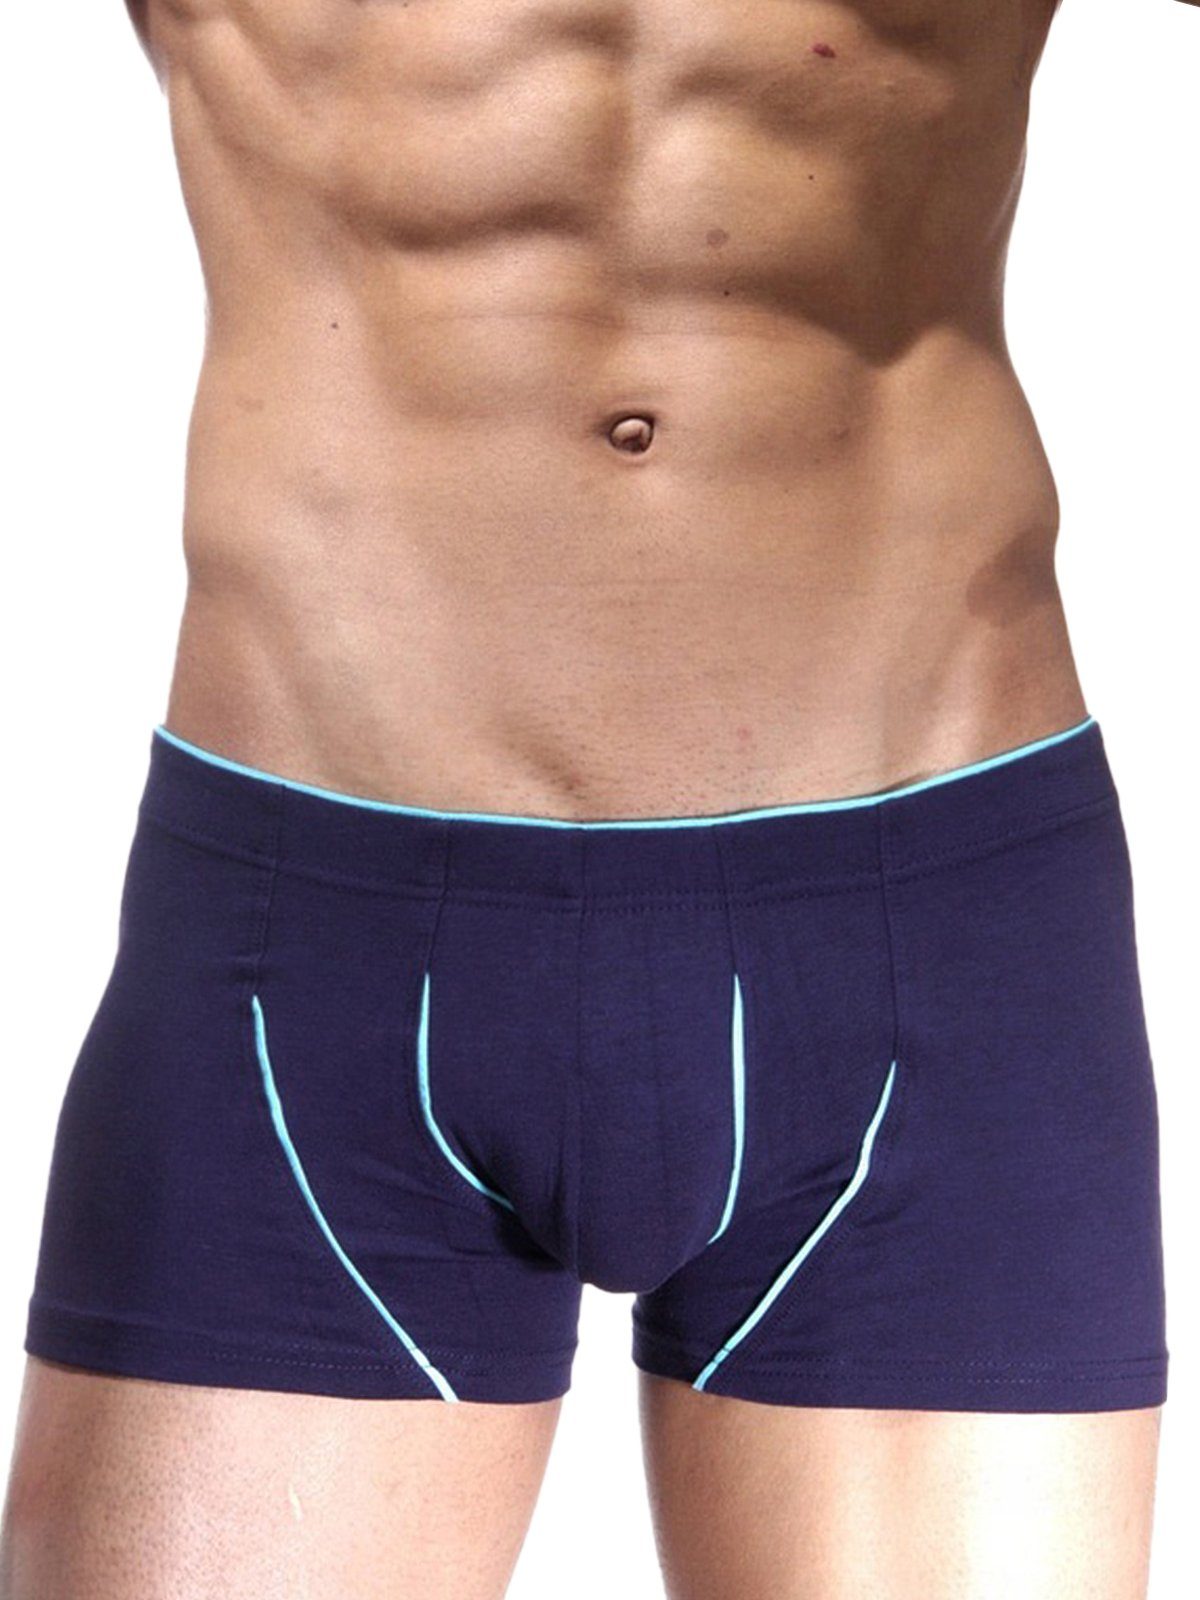 Boxer Trunk Underwear Pants Lila, Doreanse Herren DA1570 S, Purple Slimfit